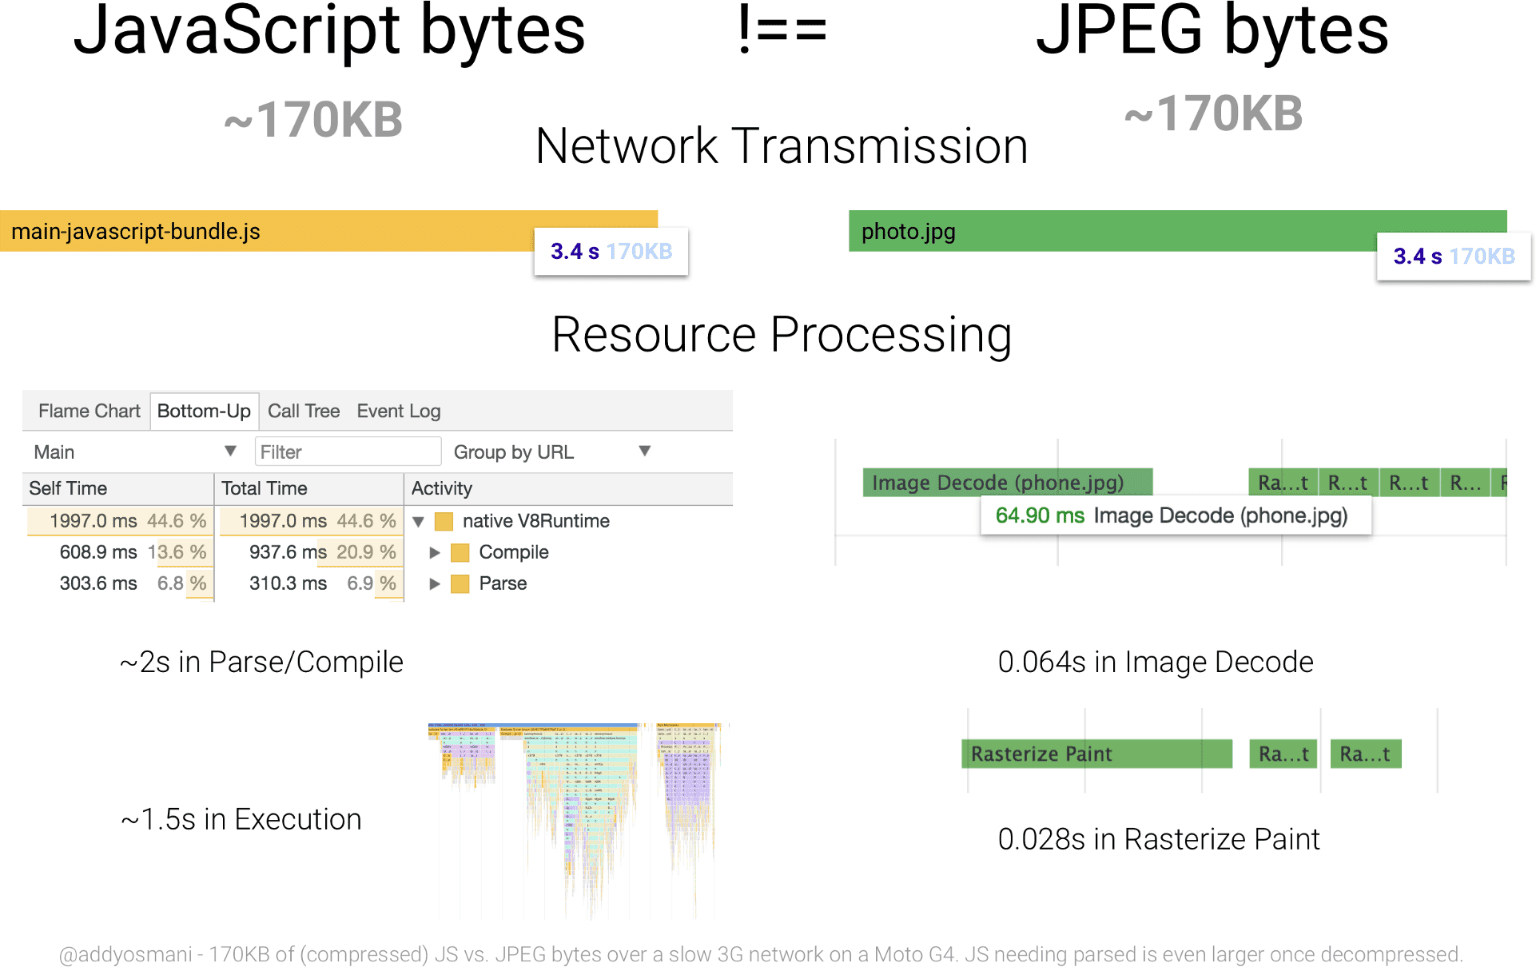 แผนภาพเปรียบเทียบเวลาประมวลผลของ JavaScript 170 KB กับรูปภาพ JPEG ที่มีขนาดเท่ากัน ทรัพยากร JavaScript จำนวนไบต์ต่อไบต์ที่ใช้ทรัพยากรมากกว่า JPEG มาก